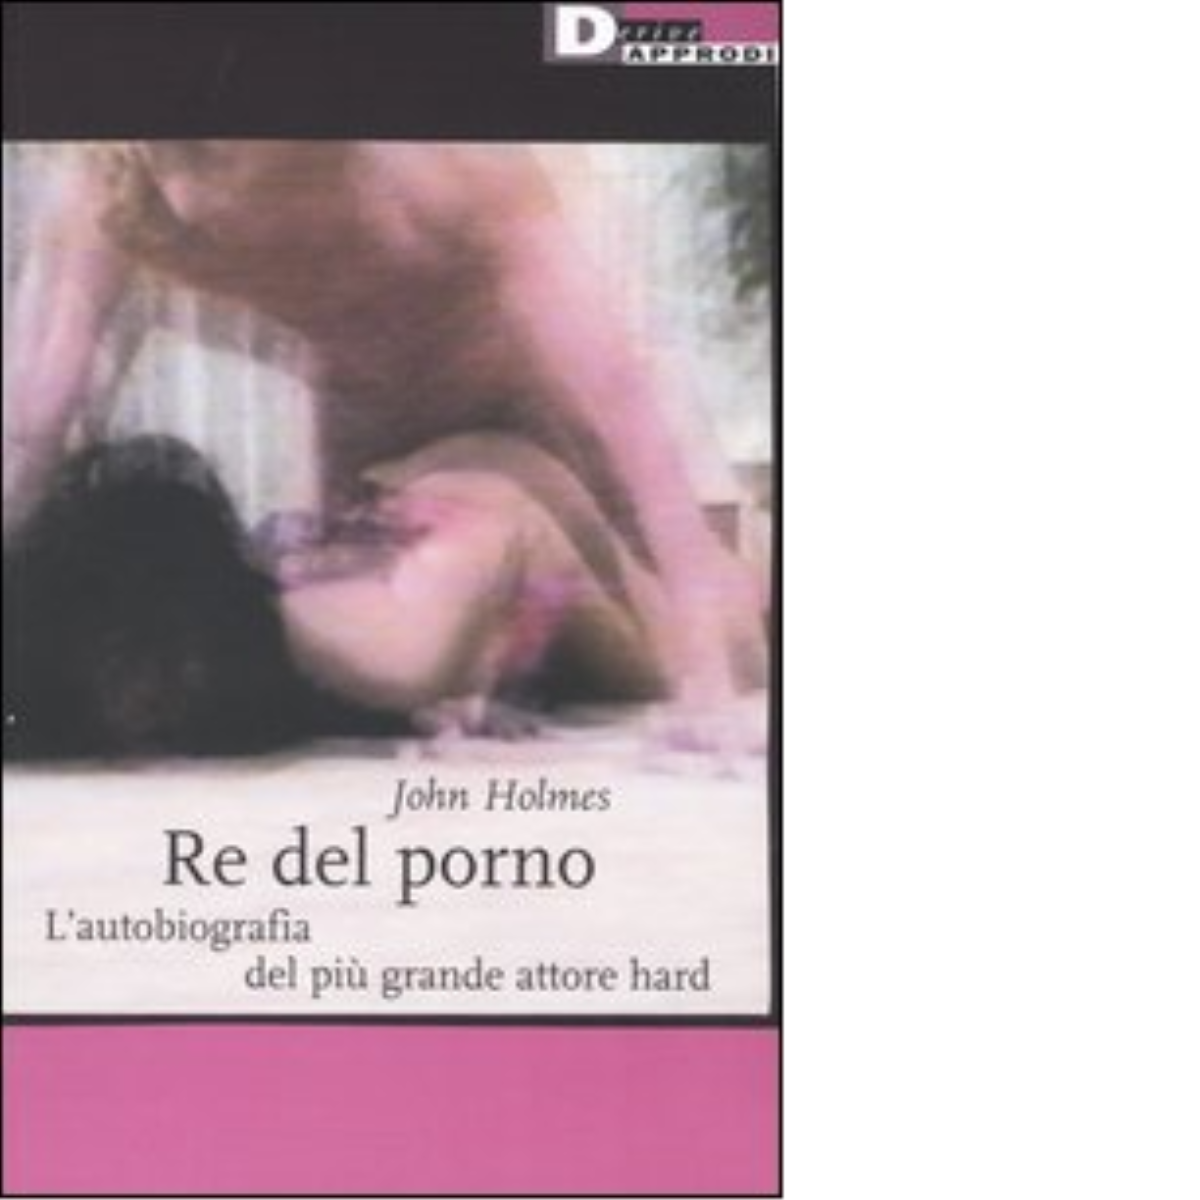 RE DEL PORNO. N.E. di JOHN HOLMES - DeriveApprodi editore, 2003 libro usato